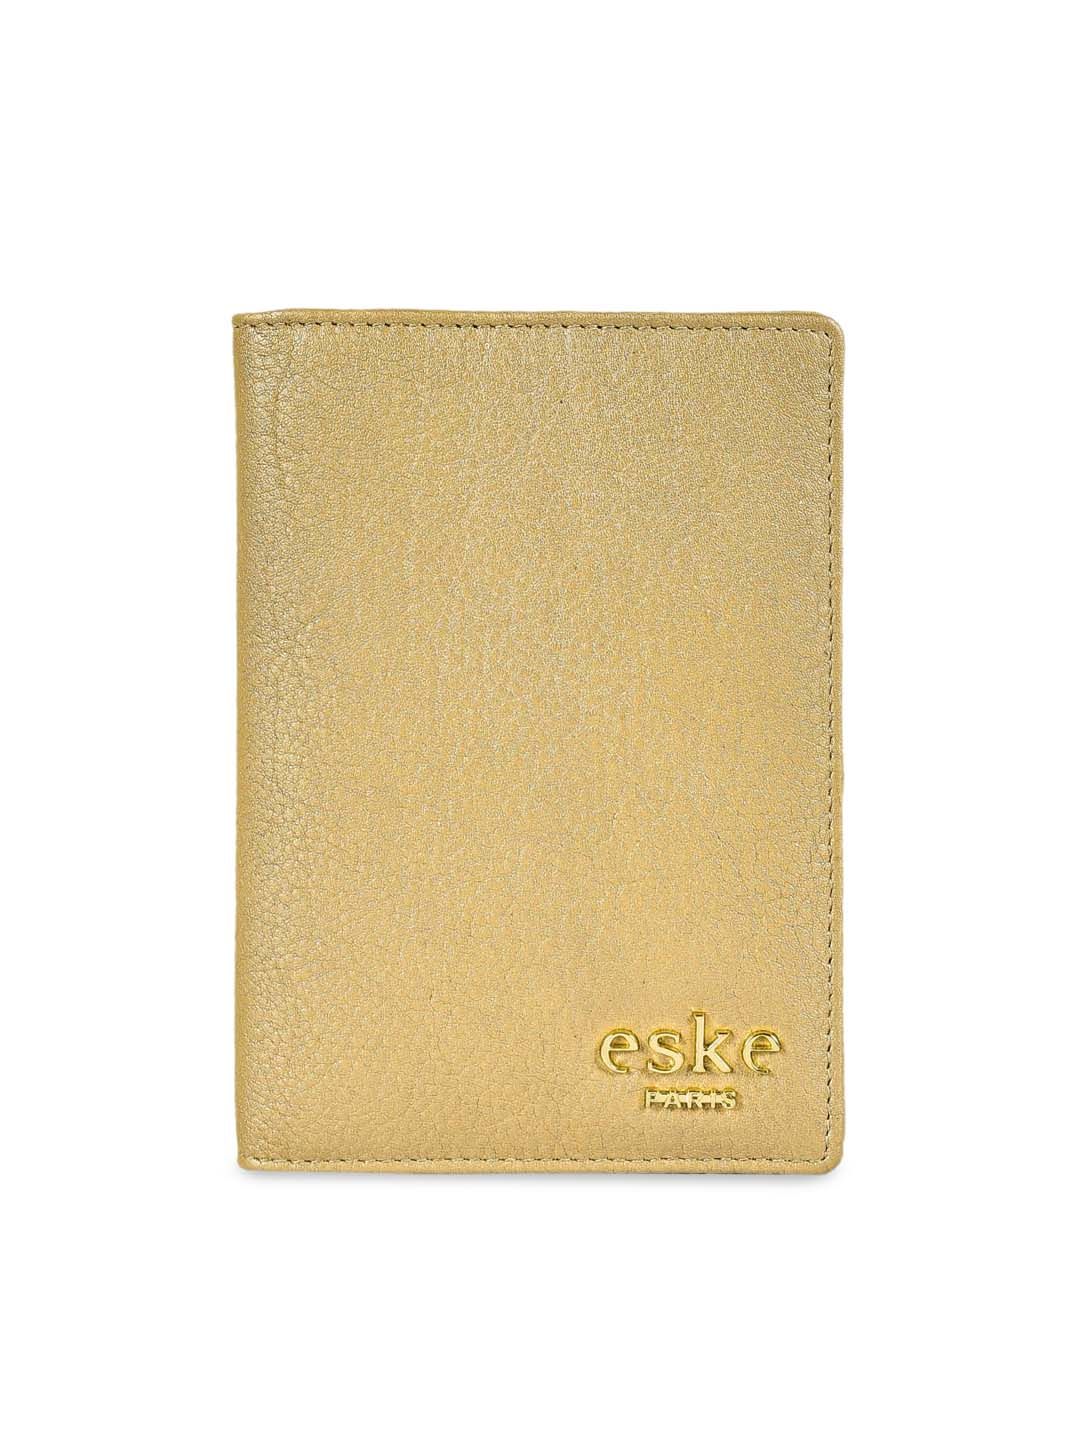 Eske Unisex Gold-Toned Textured Leather Caigo Passport Holder Price in India